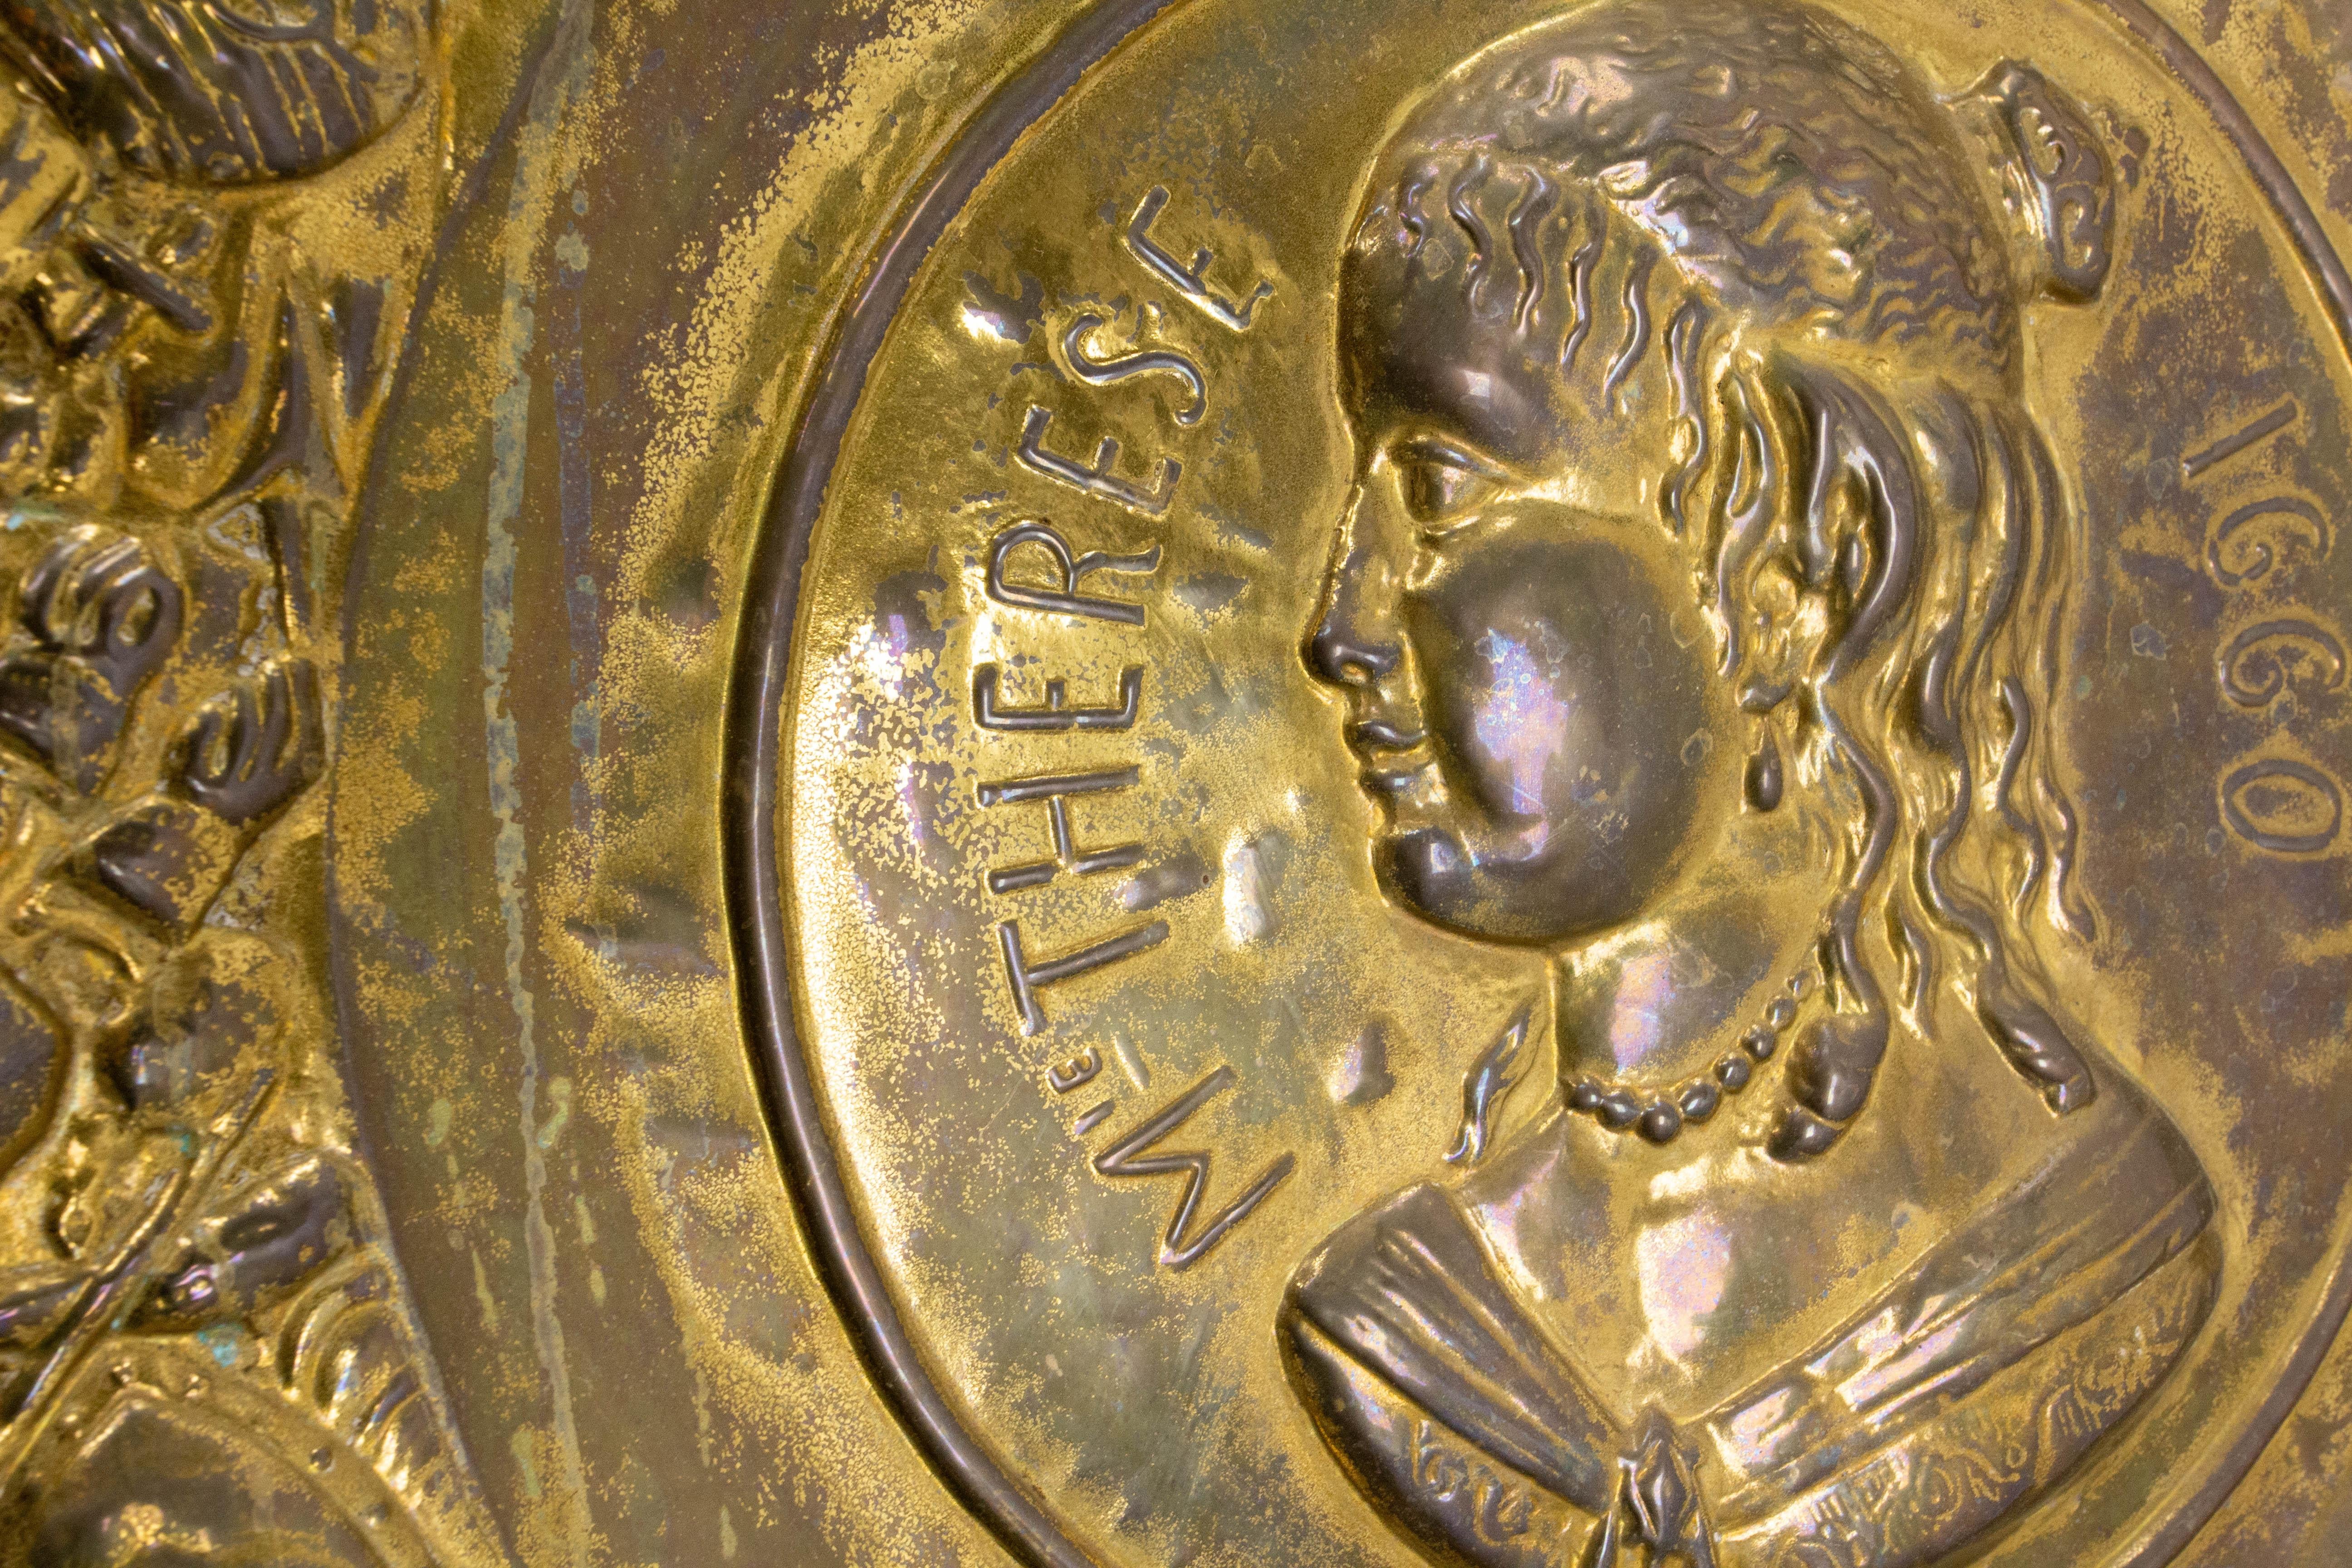 Plaque d'or en cuivre français en commémoration de Marie-Thérèse d'Autriche et du roi Louis XIV.
Ce plat a été réalisé en 1860 pour commémorer le bicentenaire du mariage de Louis XIV avec l'Infante d'Espagne, appelée Marie-Thérèse d'Autriche car sa